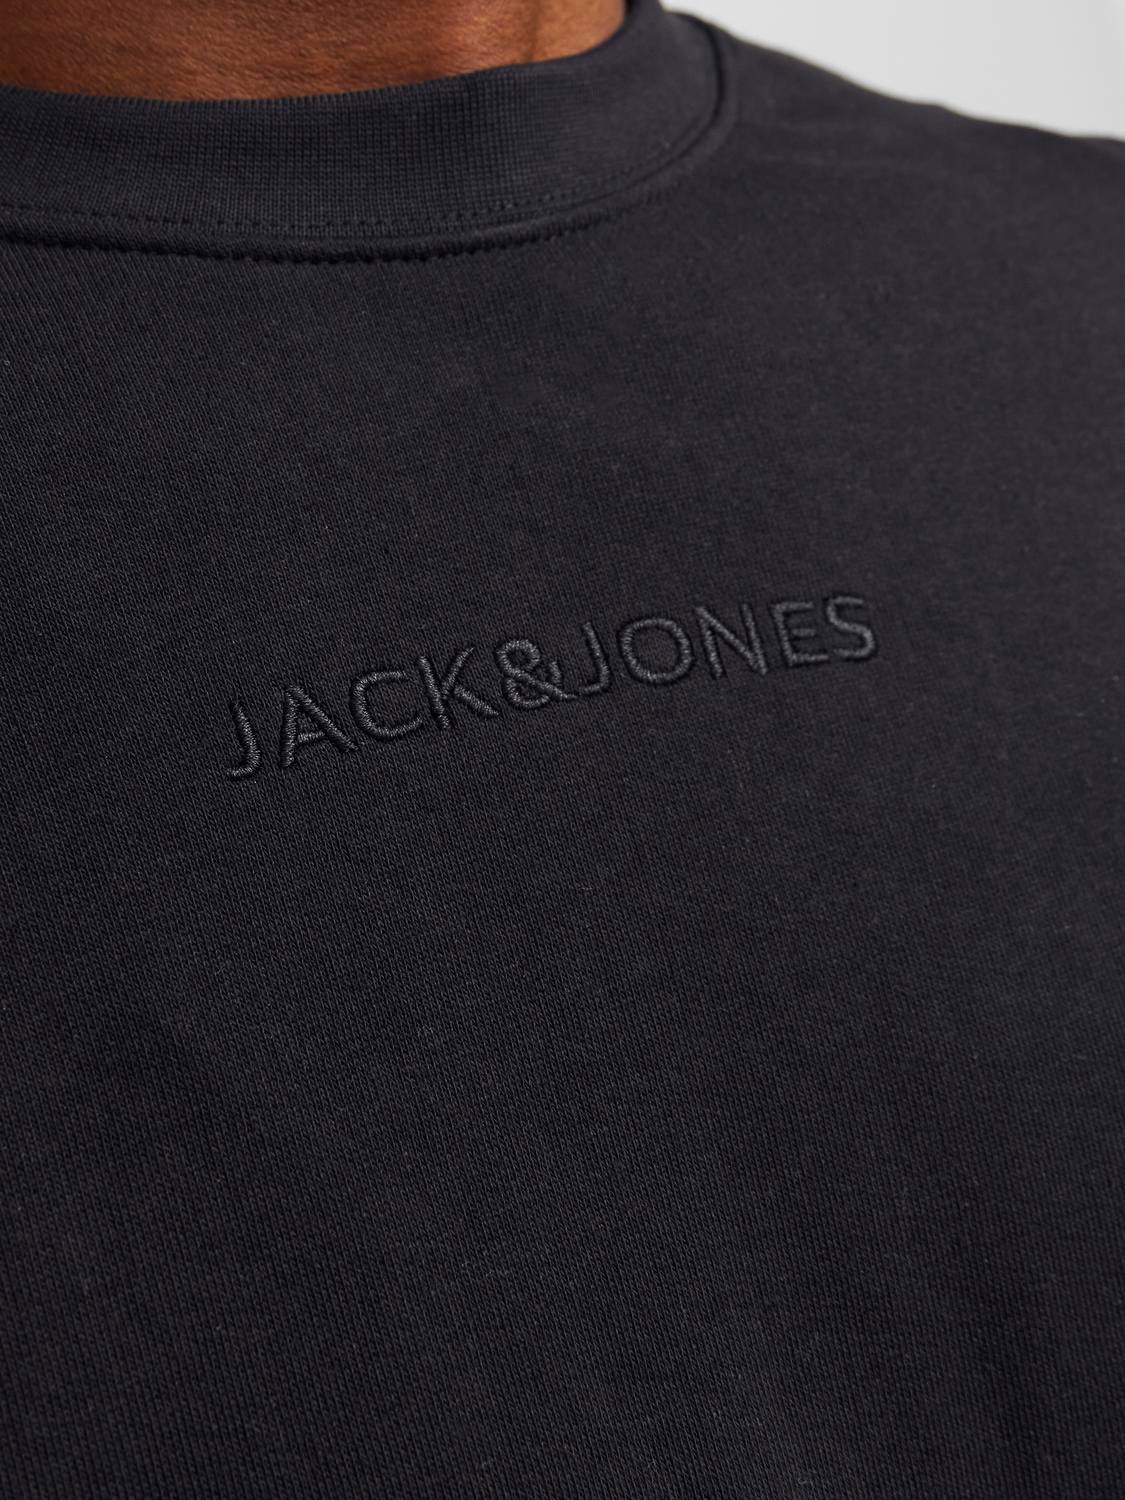 Jack & Jones Wide Fit Crew neck Sweatshirt -Black - 12253369